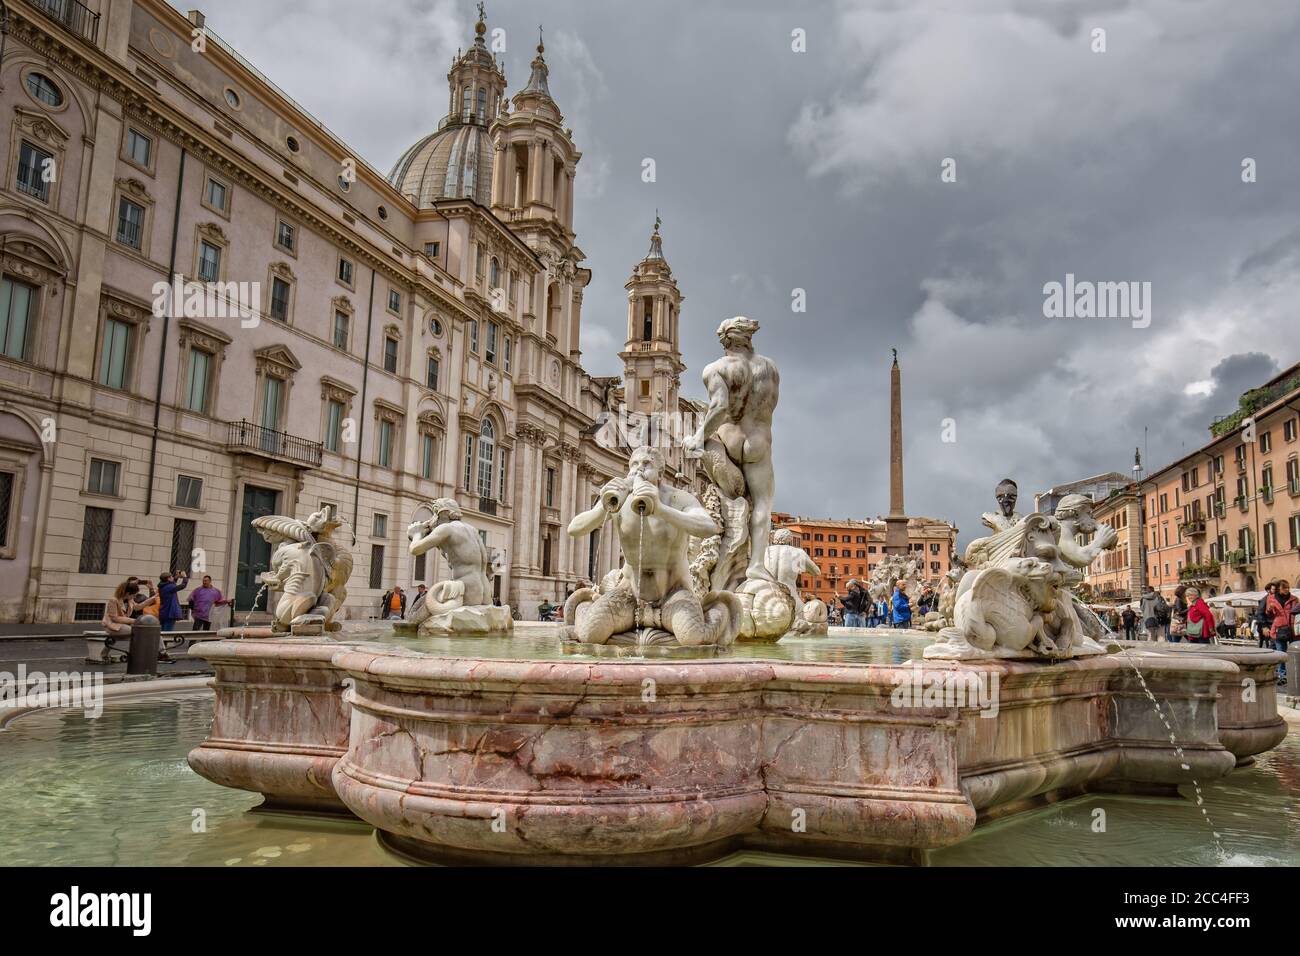 Roma, Italia - 14 de mayo de 2016: Fuente de la Moor (Fontana del Moro), situada en la famosa Piazza Navona y construida en 1574 por Giacomo Della Porta Foto de stock